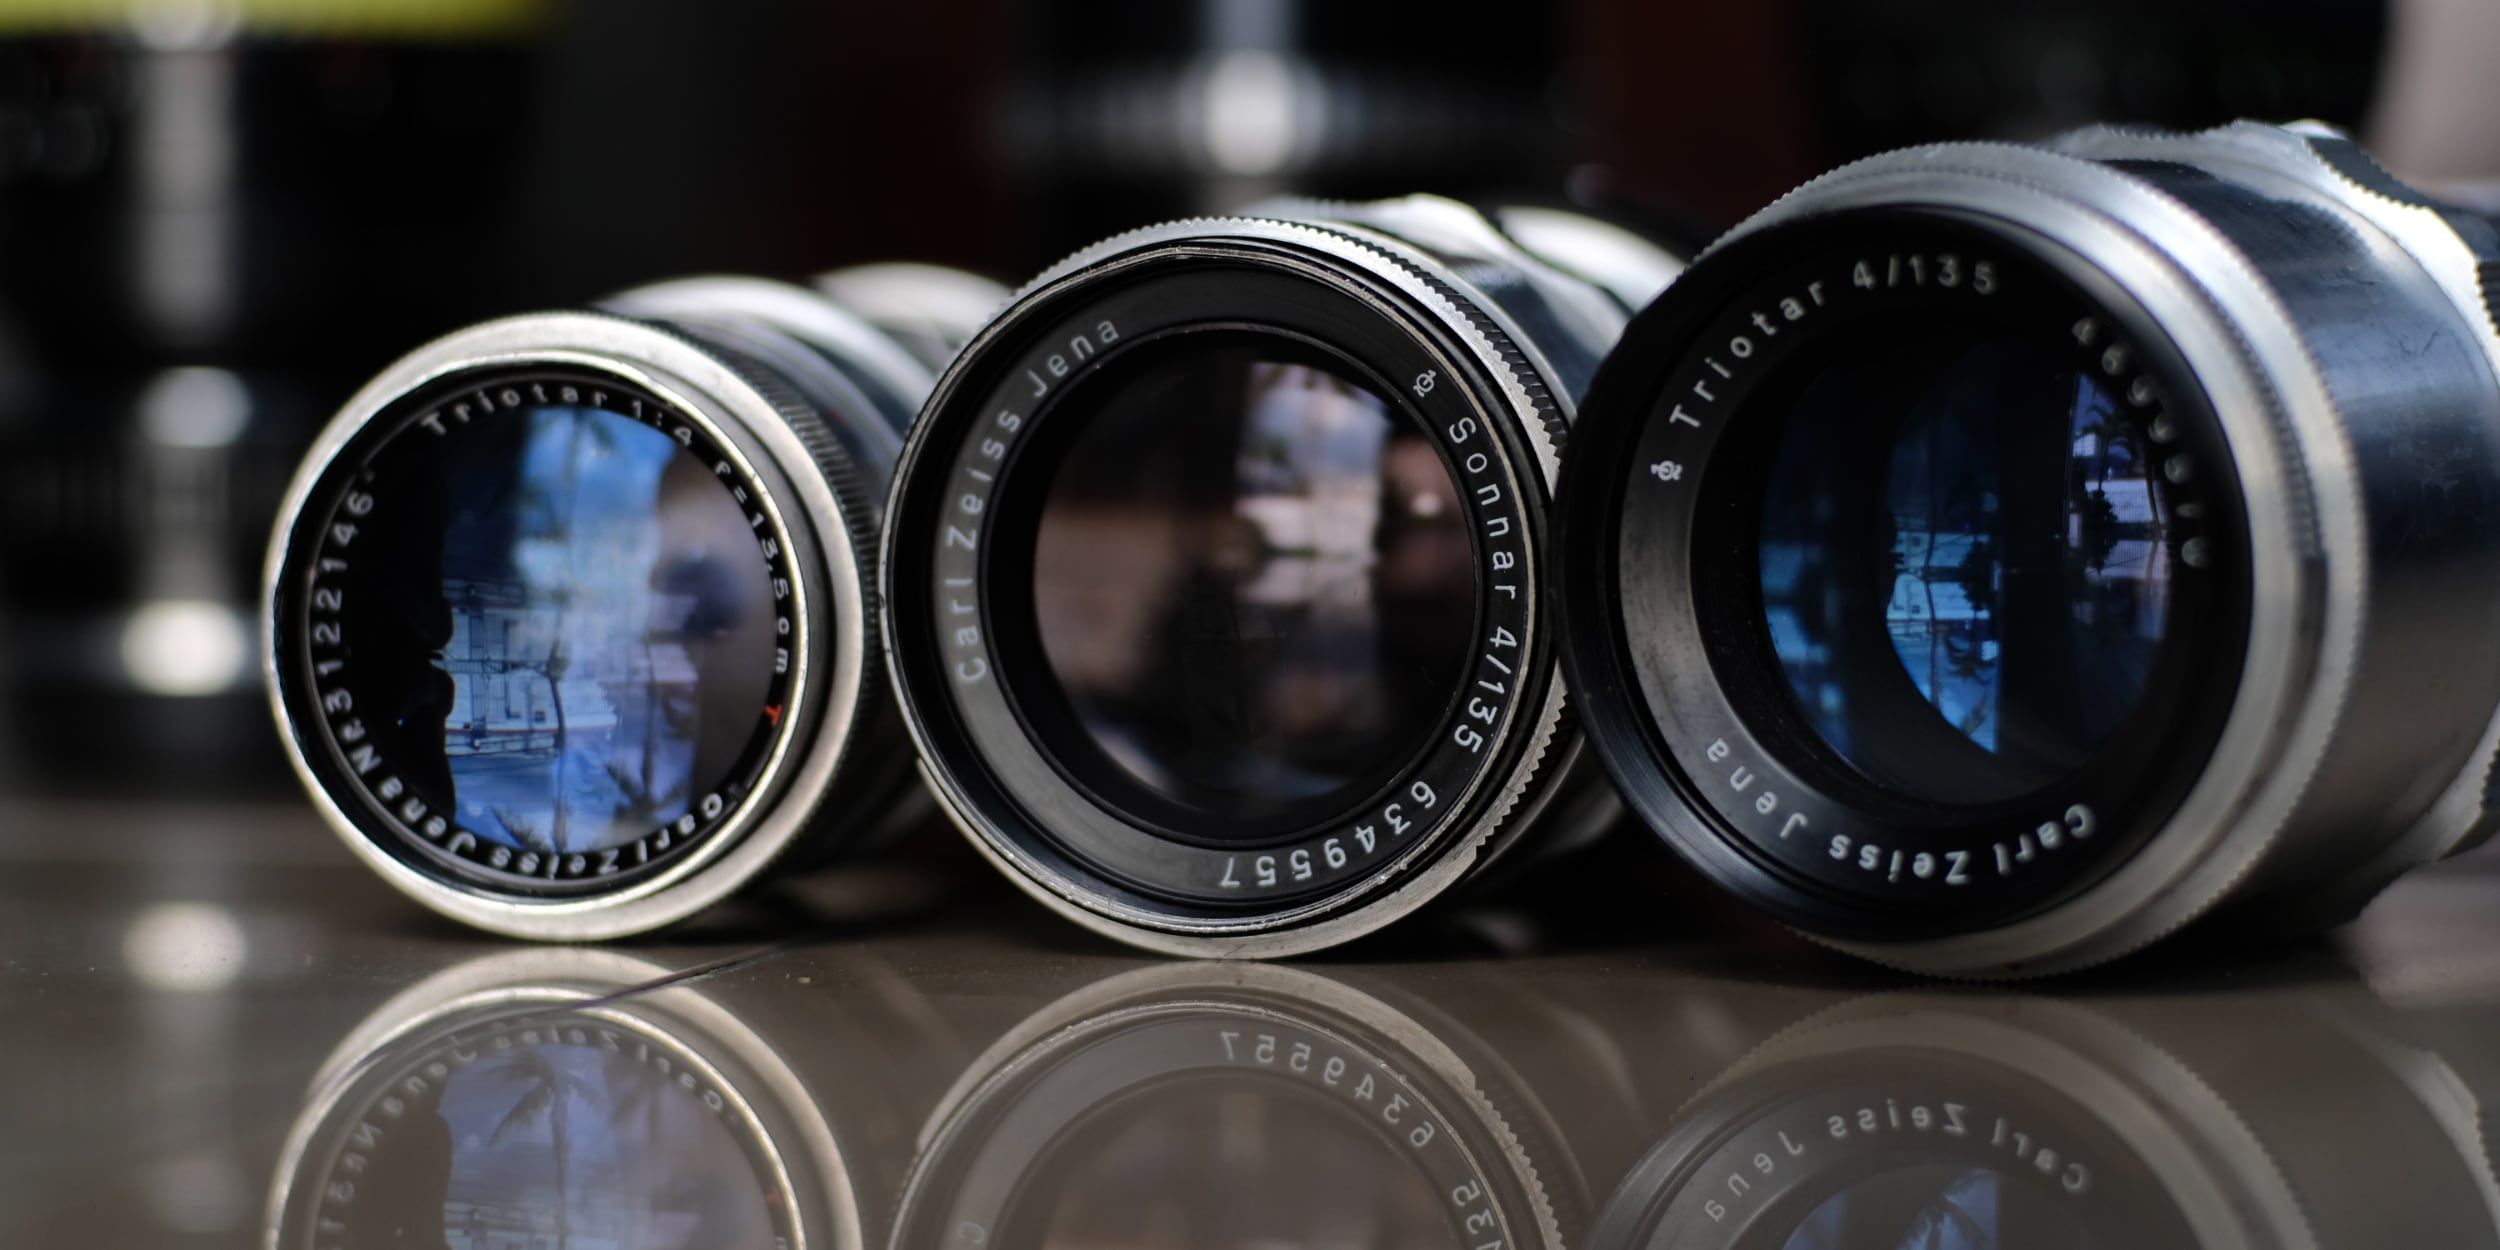 Photo of three camera lenses